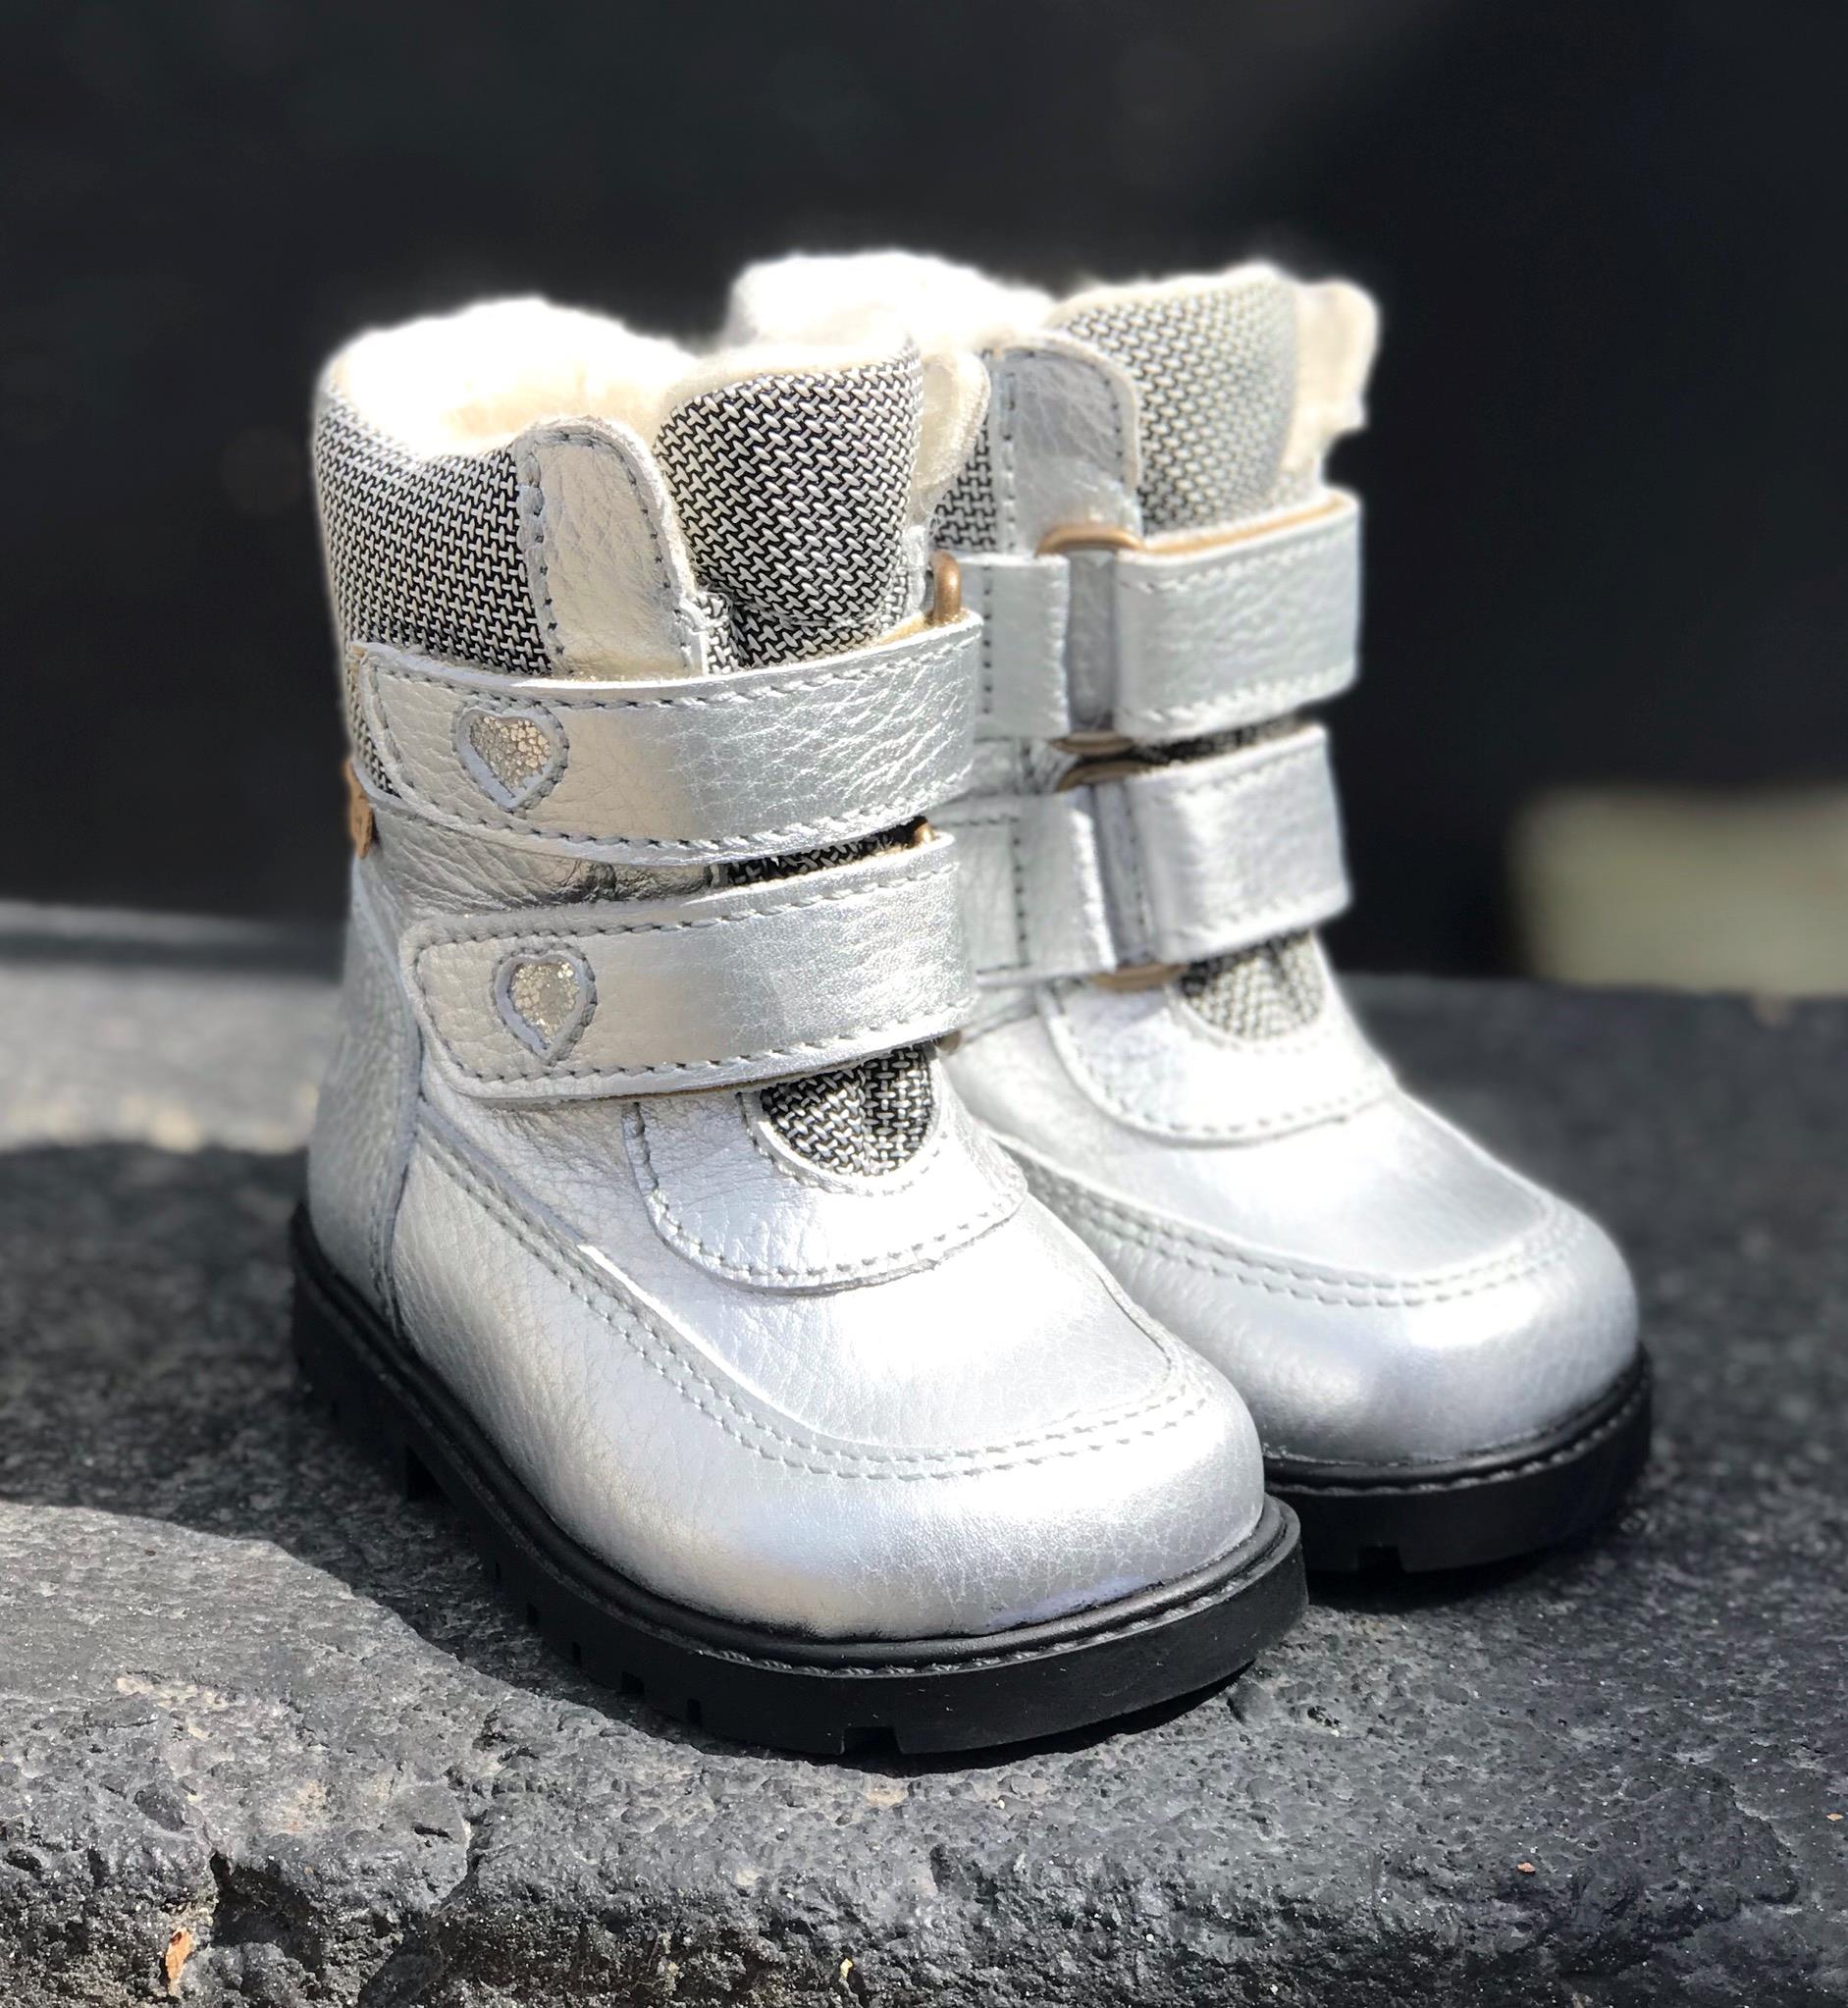 Arauto sølv skind støvler og god støtte